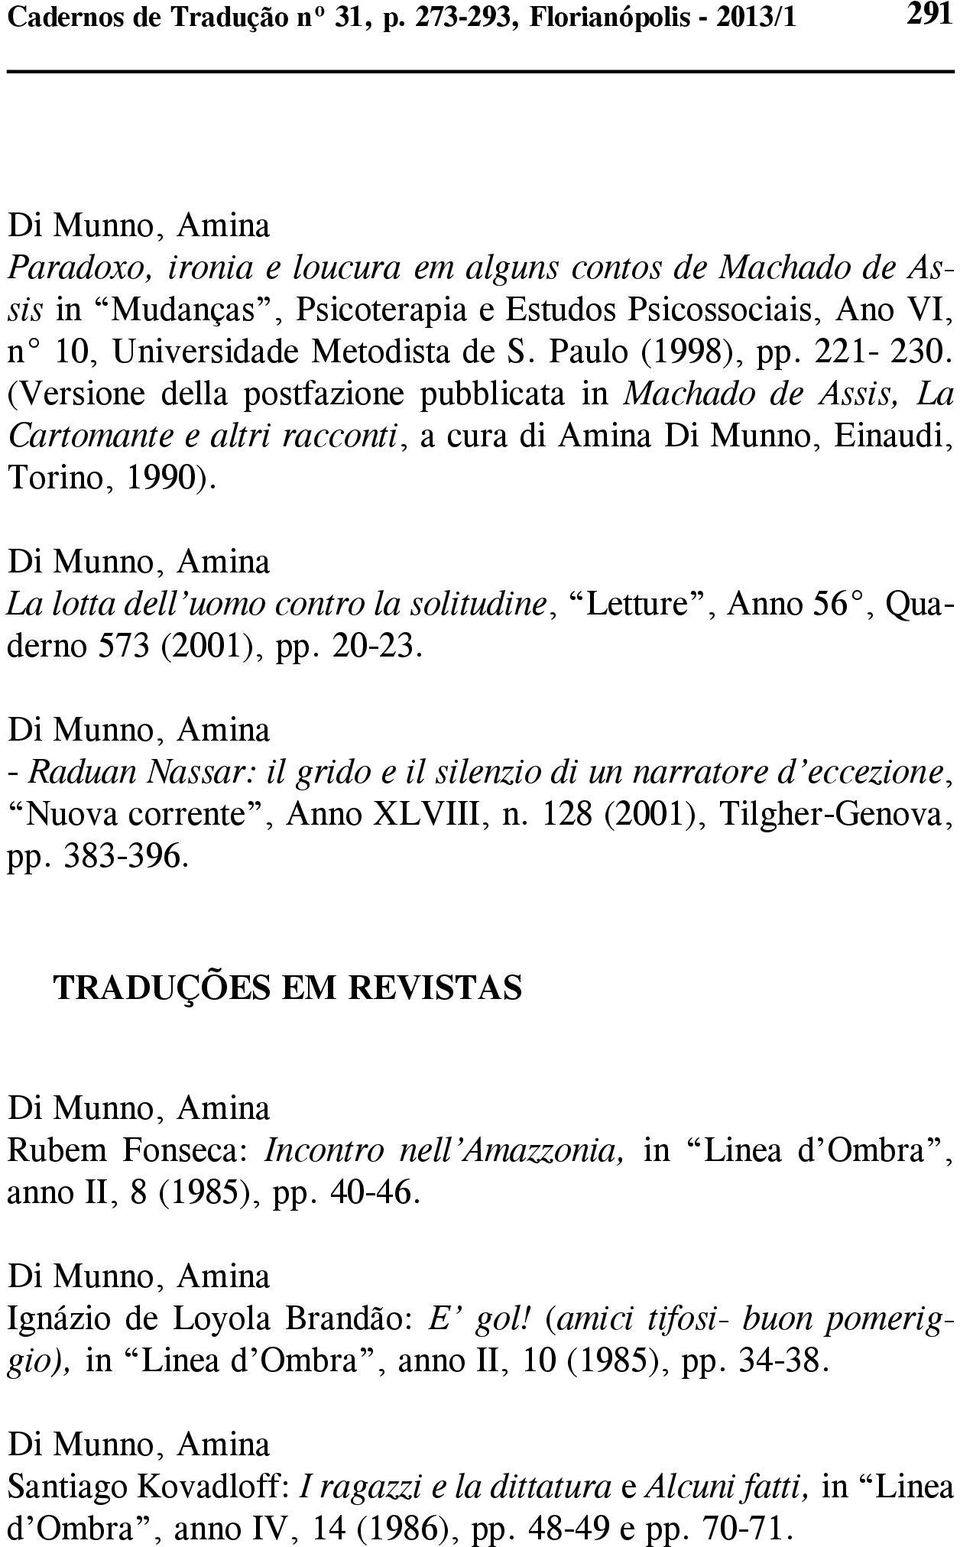 Paulo (1998), pp. 221-230. (Versione della postfazione pubblicata in Machado de Assis, La Cartomante e altri racconti, a cura di Amina Di Munno, Einaudi, Torino, 1990).